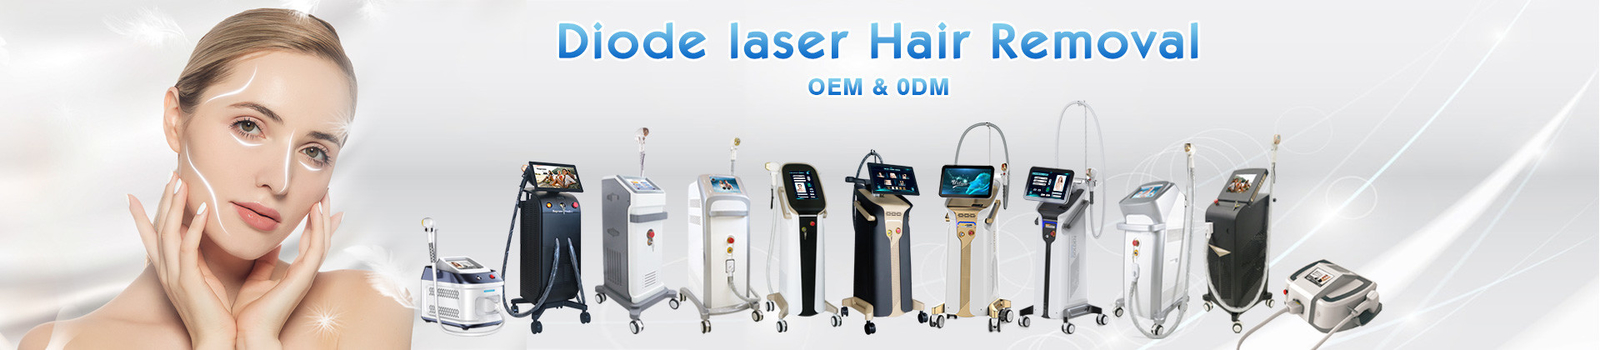 Mesin hair removal laser dioda